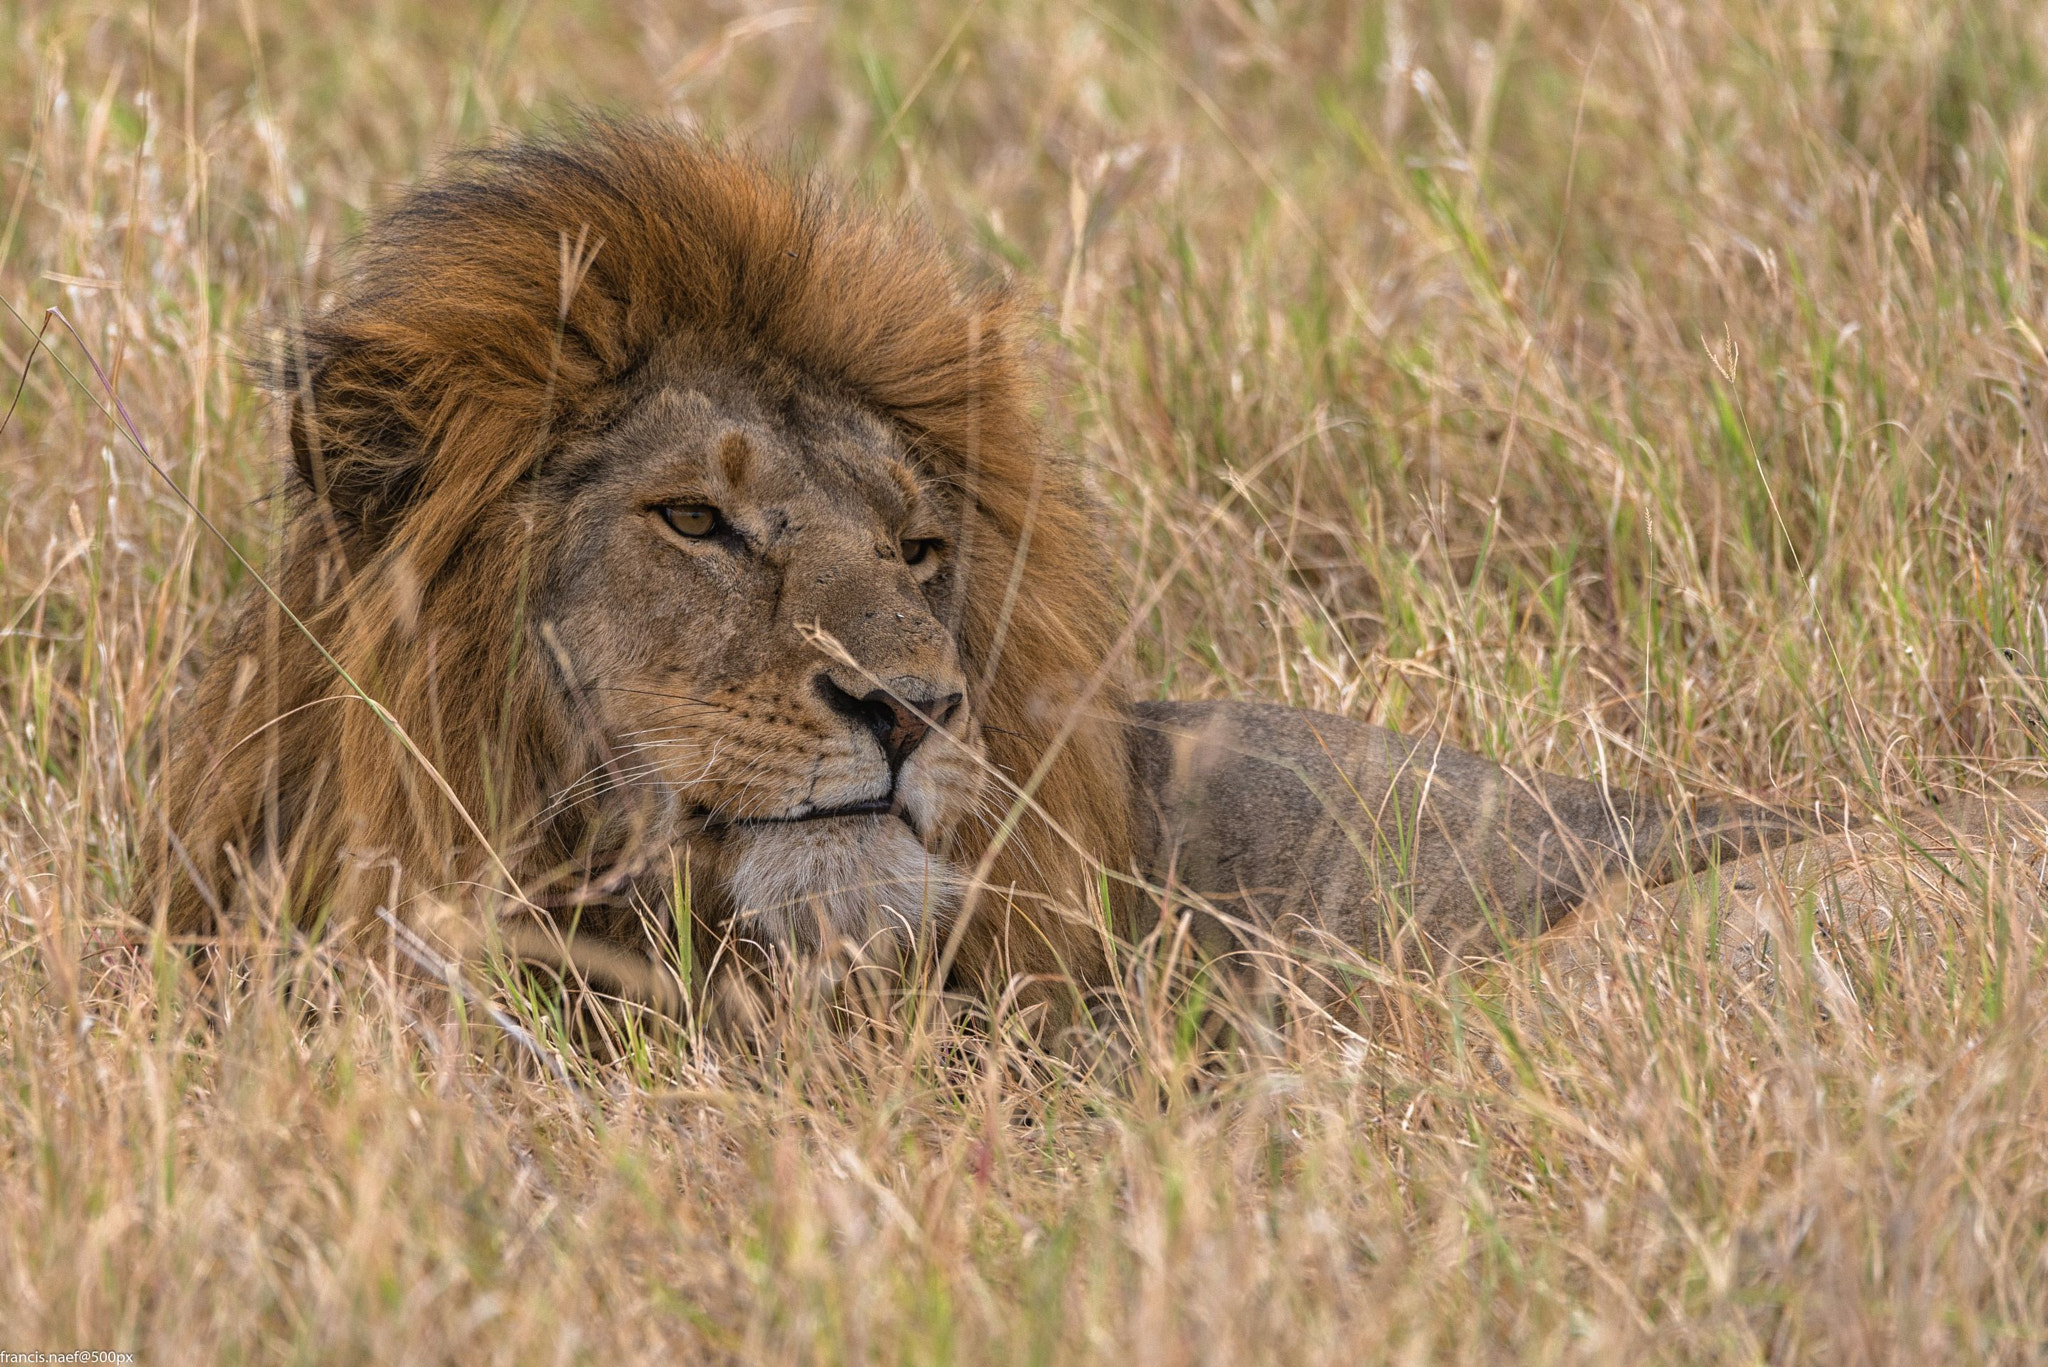 Nikon D800 sample photo. Tanzanian lion photography